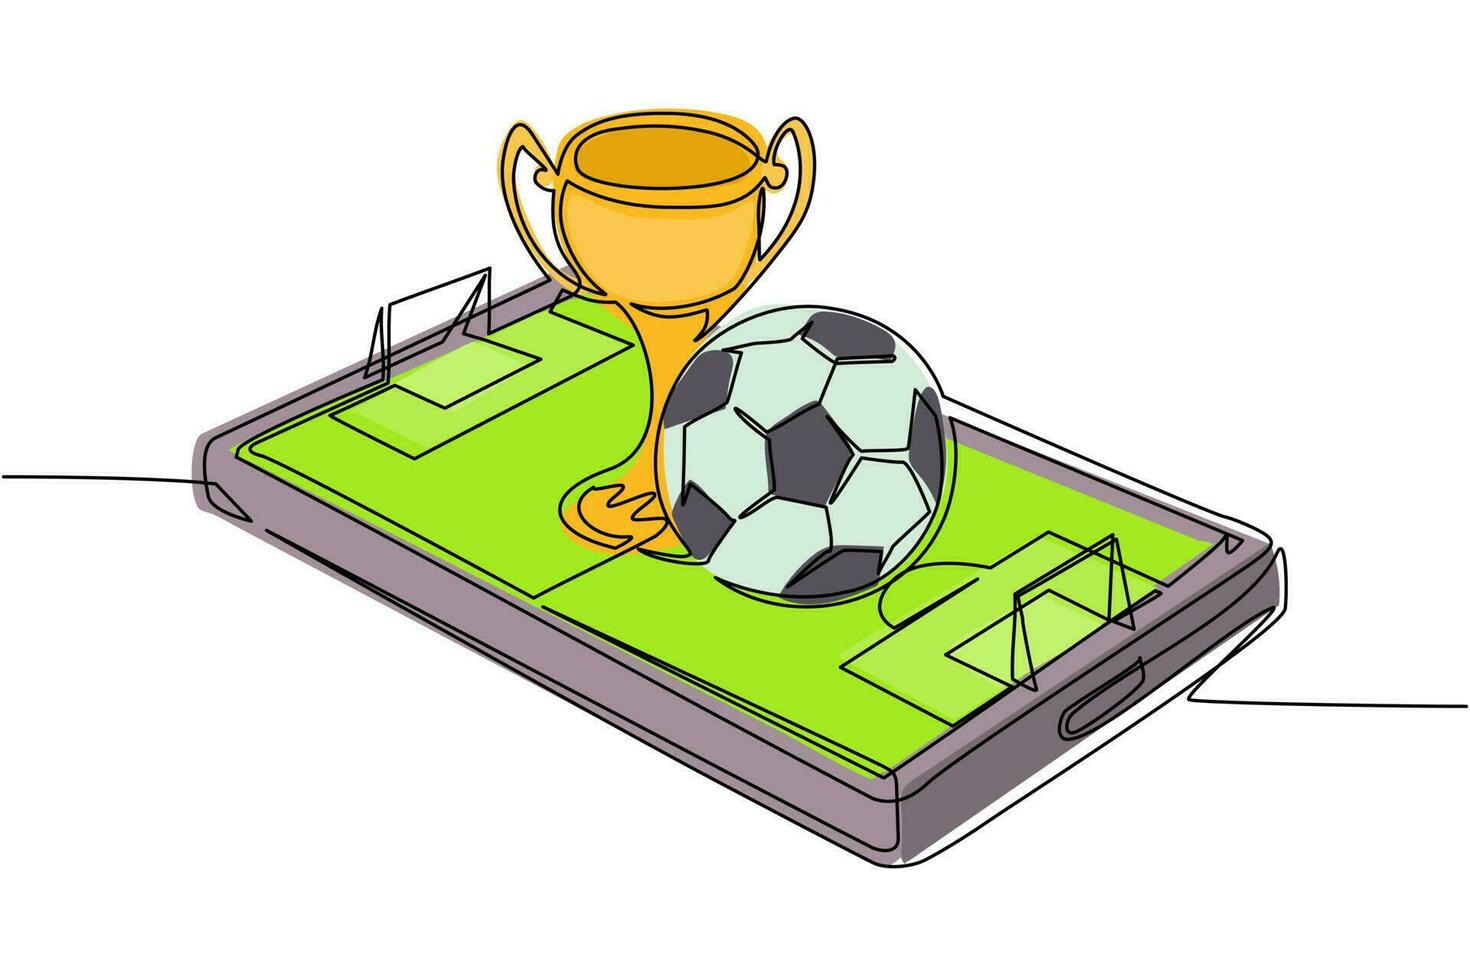 pallone da calcio con disegno a linea continua singola e coppa del trofeo sullo schermo dello smartphone del campo di calcio virtuale. calcio calcio mobile. gioco di calcio online con app mobile dal vivo. vettore di disegno di una linea